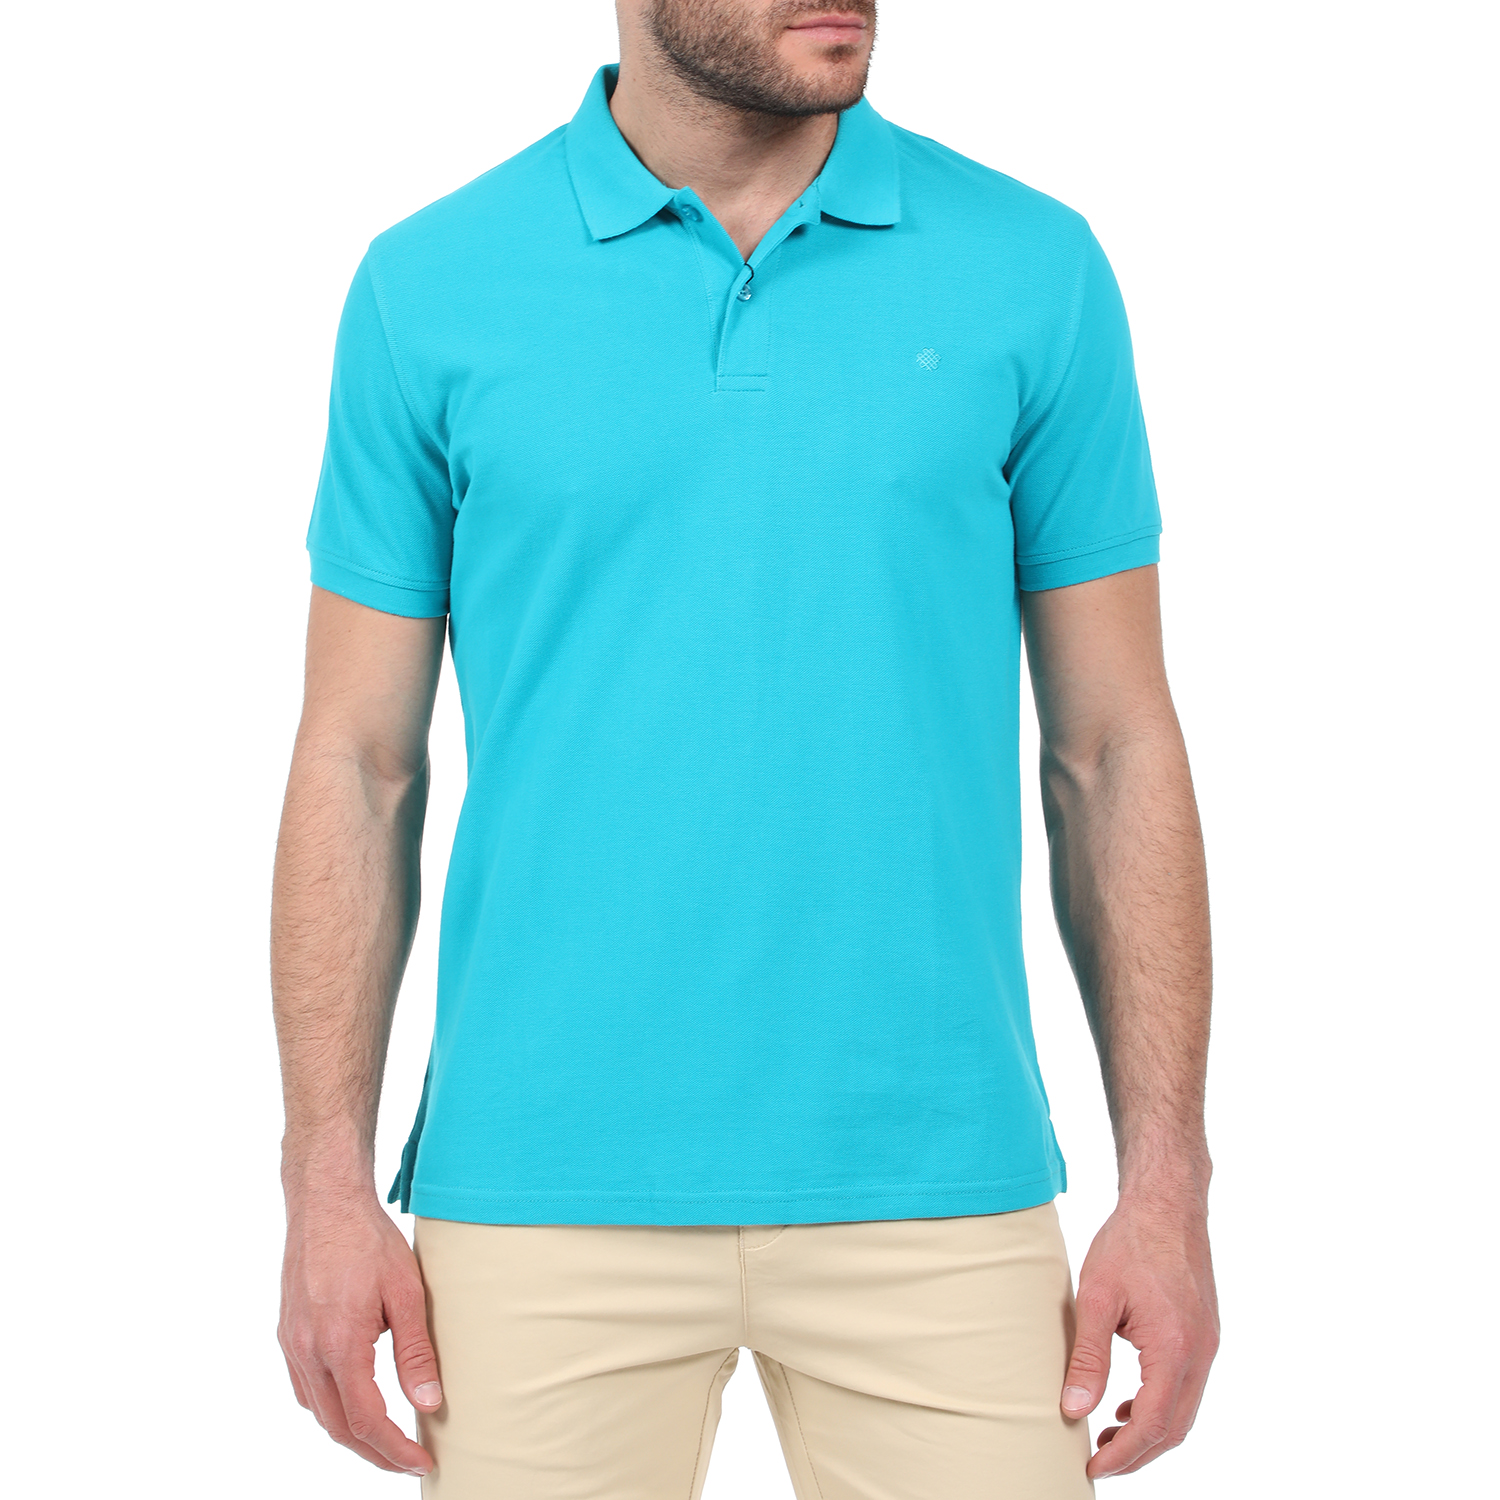 Ανδρικά/Ρούχα/Μπλούζες/Πόλο DORS - Ανδρική polo μπλούζα DORS γαλάζια